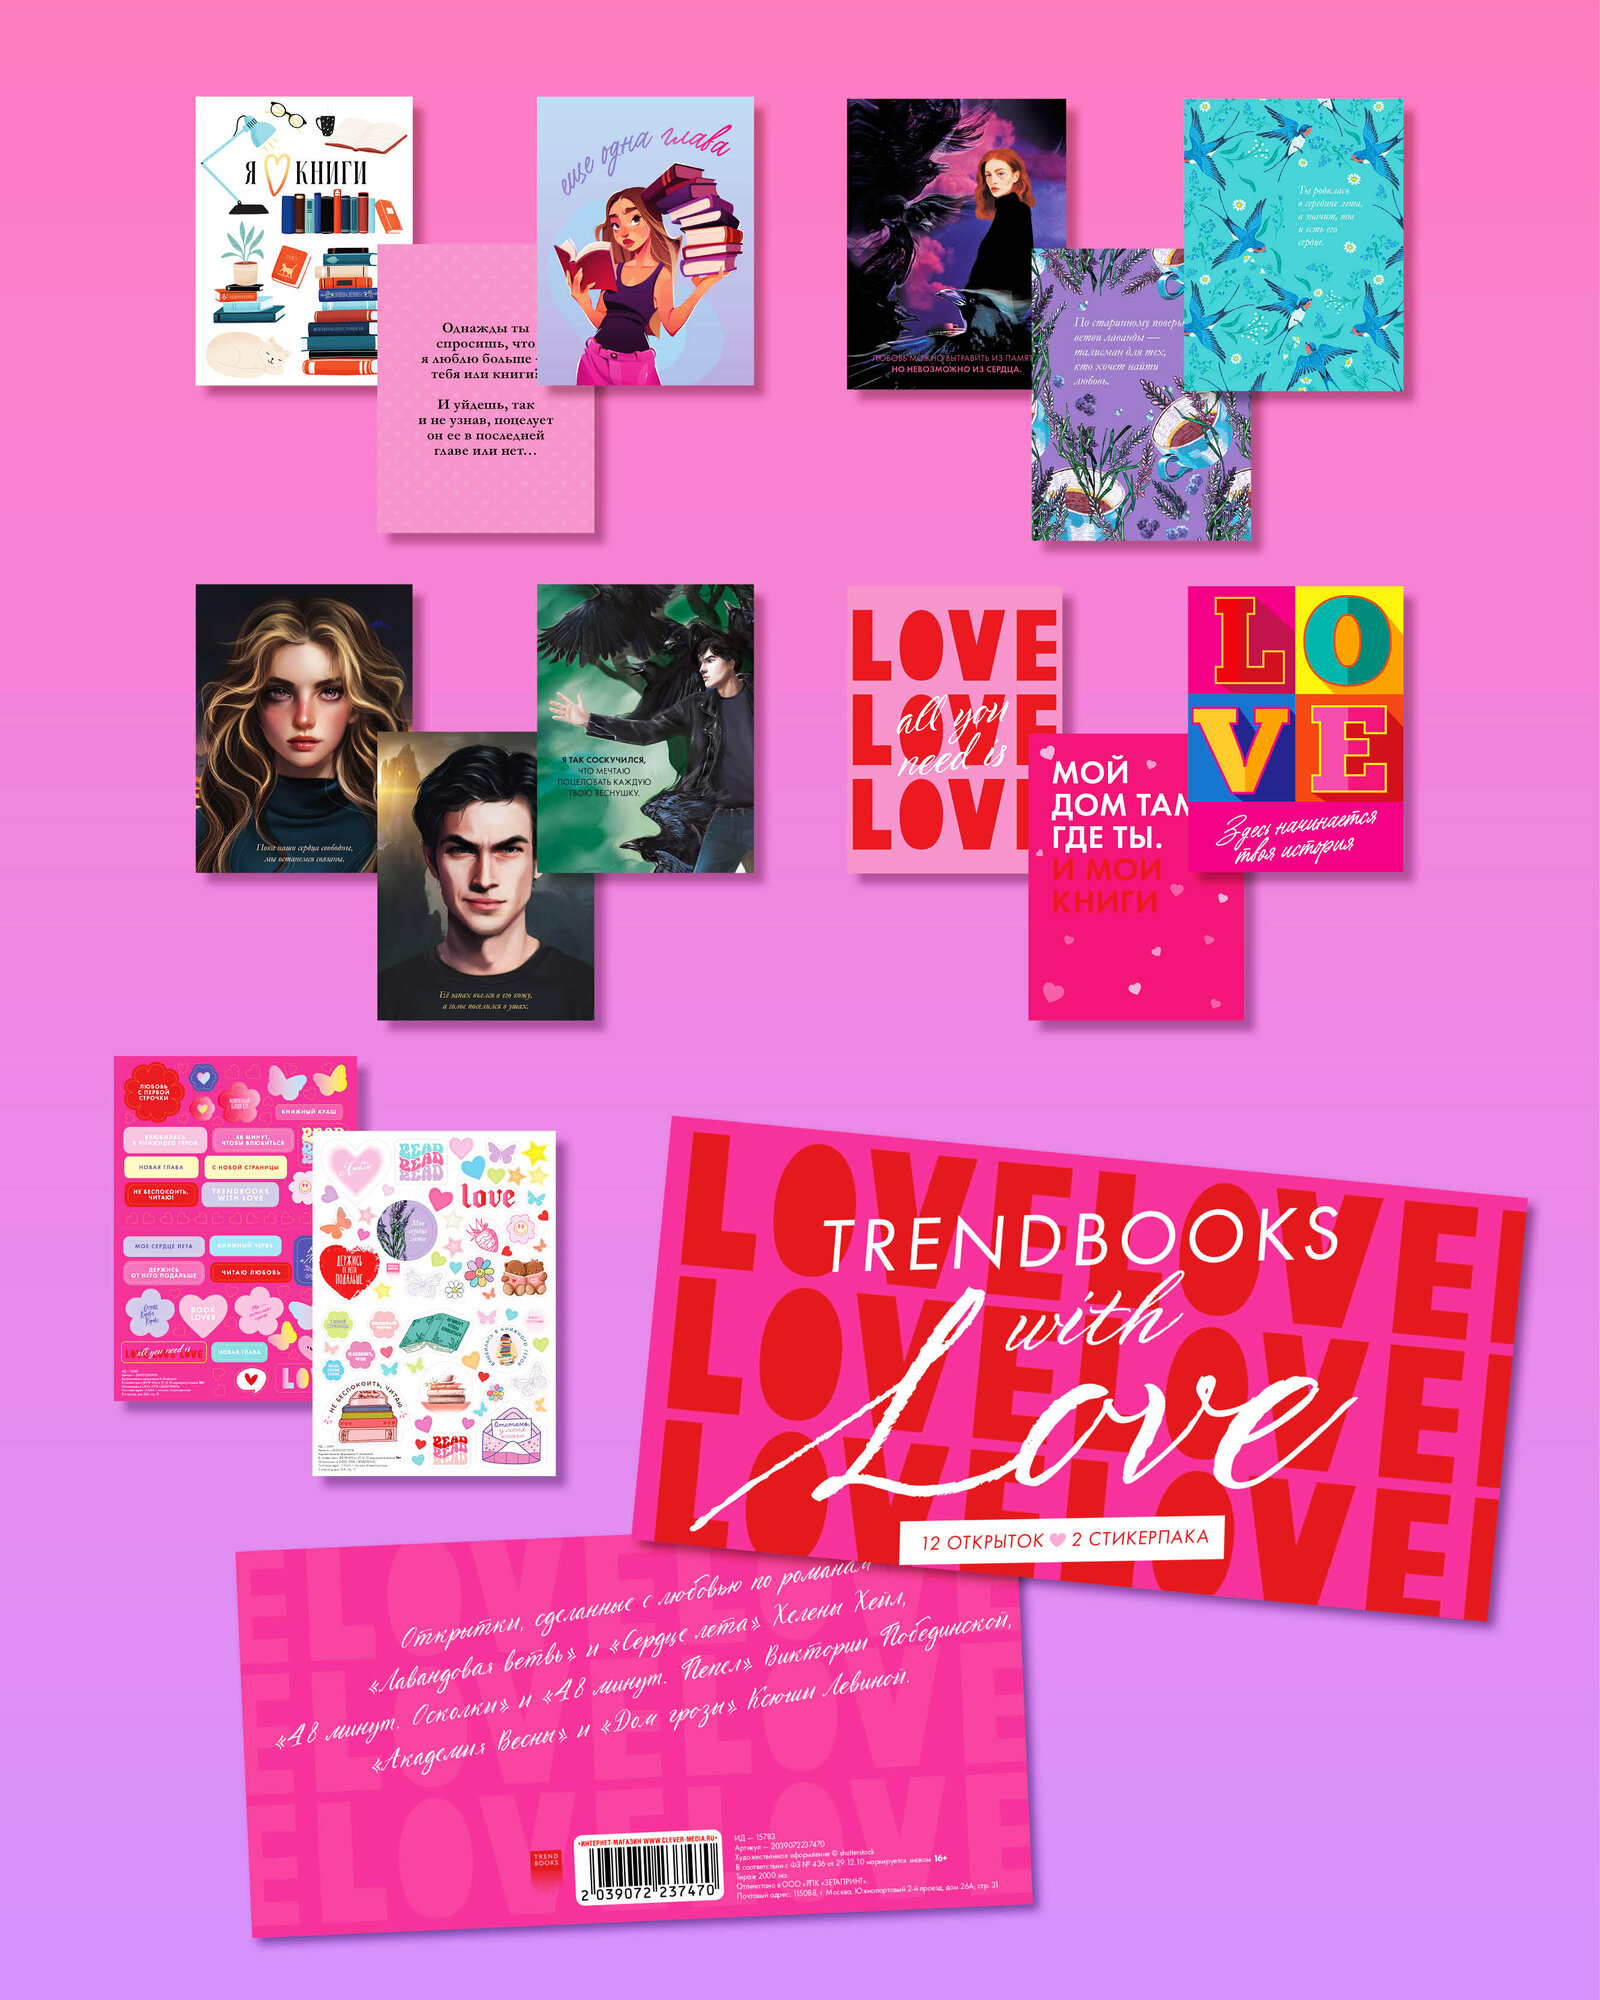 Набор из 12 открыток и 2 стикерпаков Trendbooks with love. По мотивам книг о любви